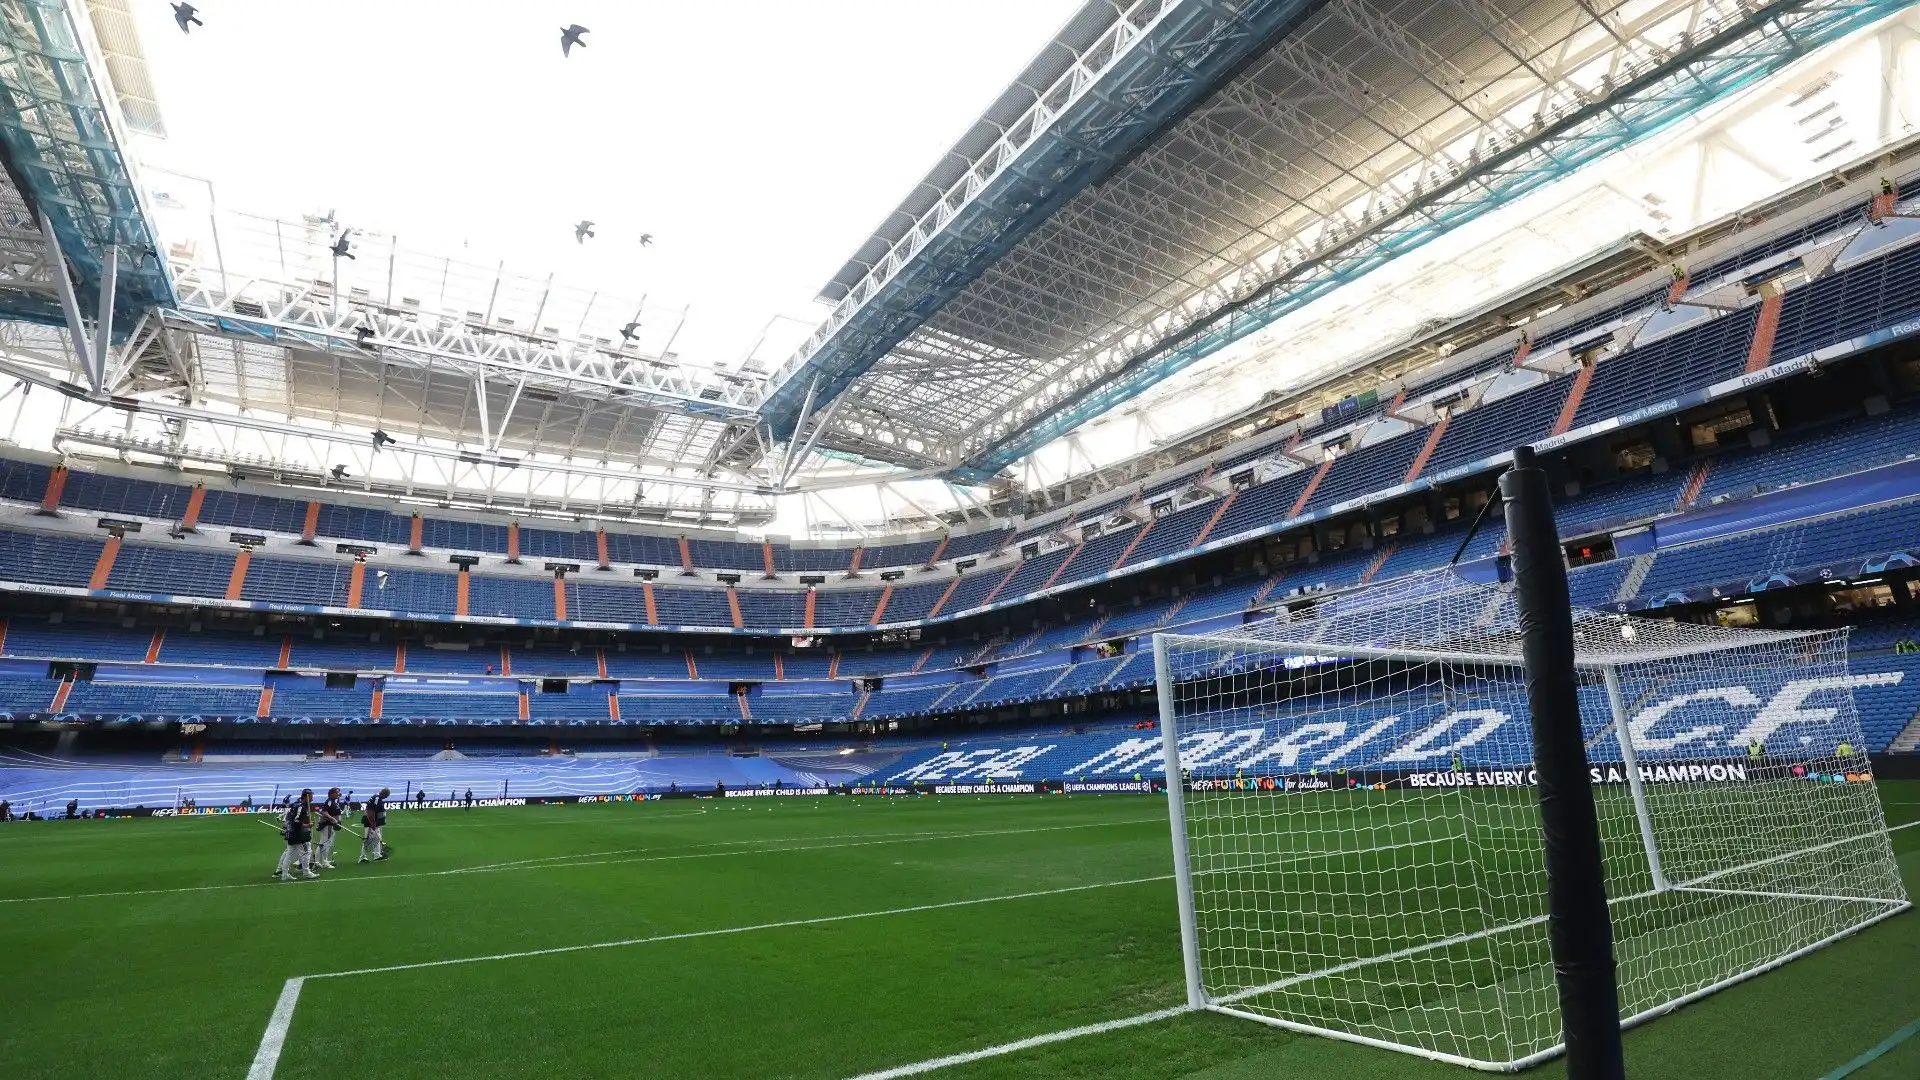 Santiago Bernabeu - Madrid, Spagna: lo stadio del Real Madrid, noto per la sua architettura moderna e la sua capacità di ospitare grandi eventi